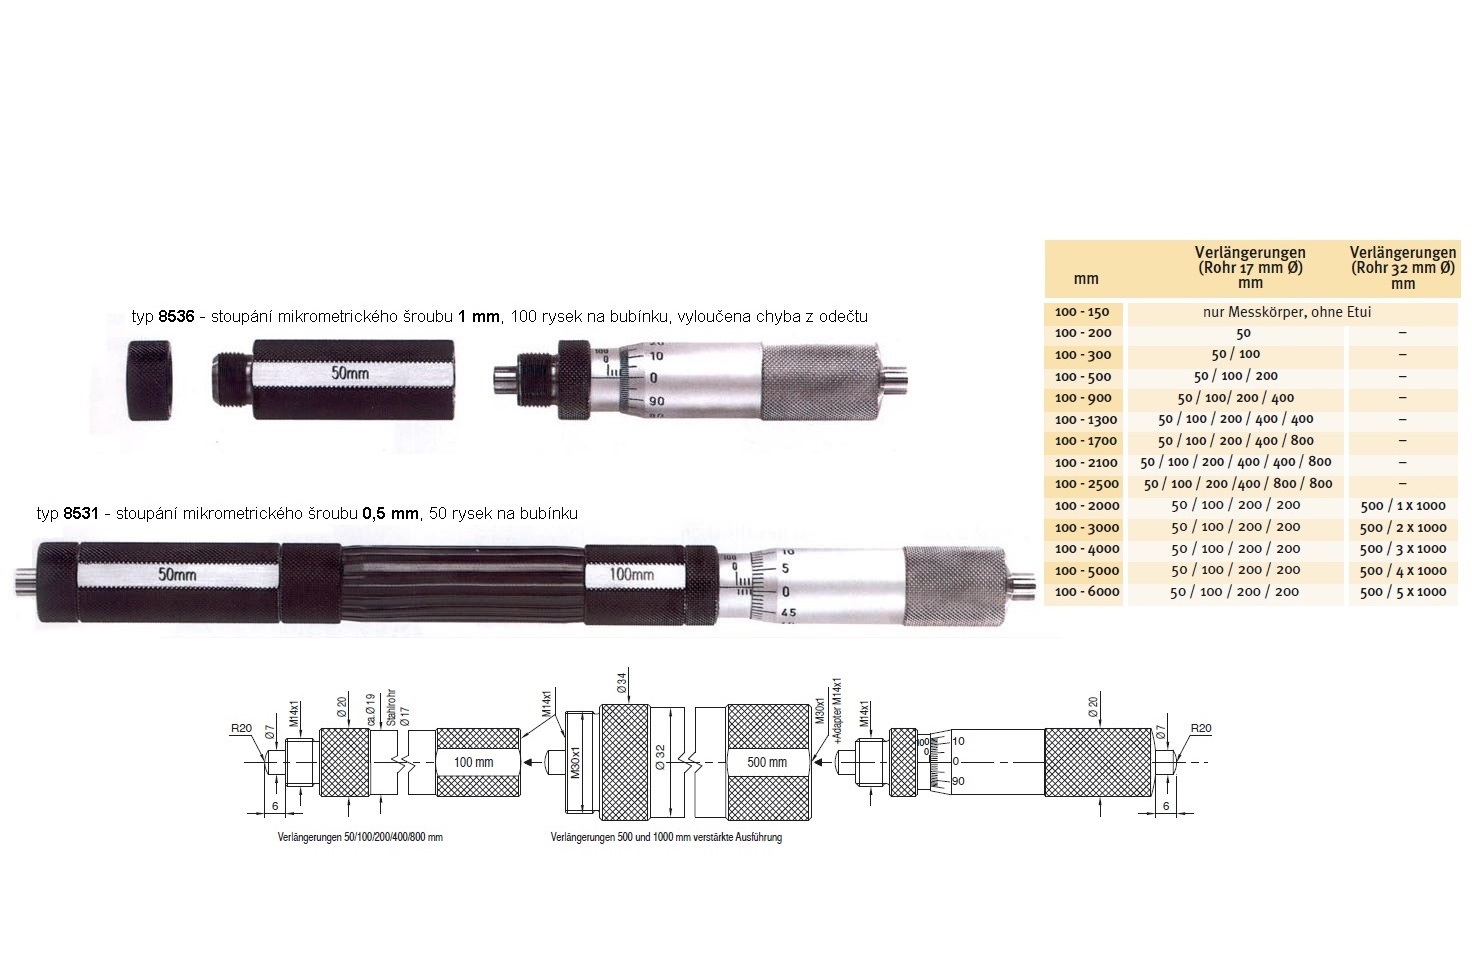 Mikrometrický odpich skládací HARTIG 100-1700 mm, stoupání šroubu 1 mm, doteky tvrdokov